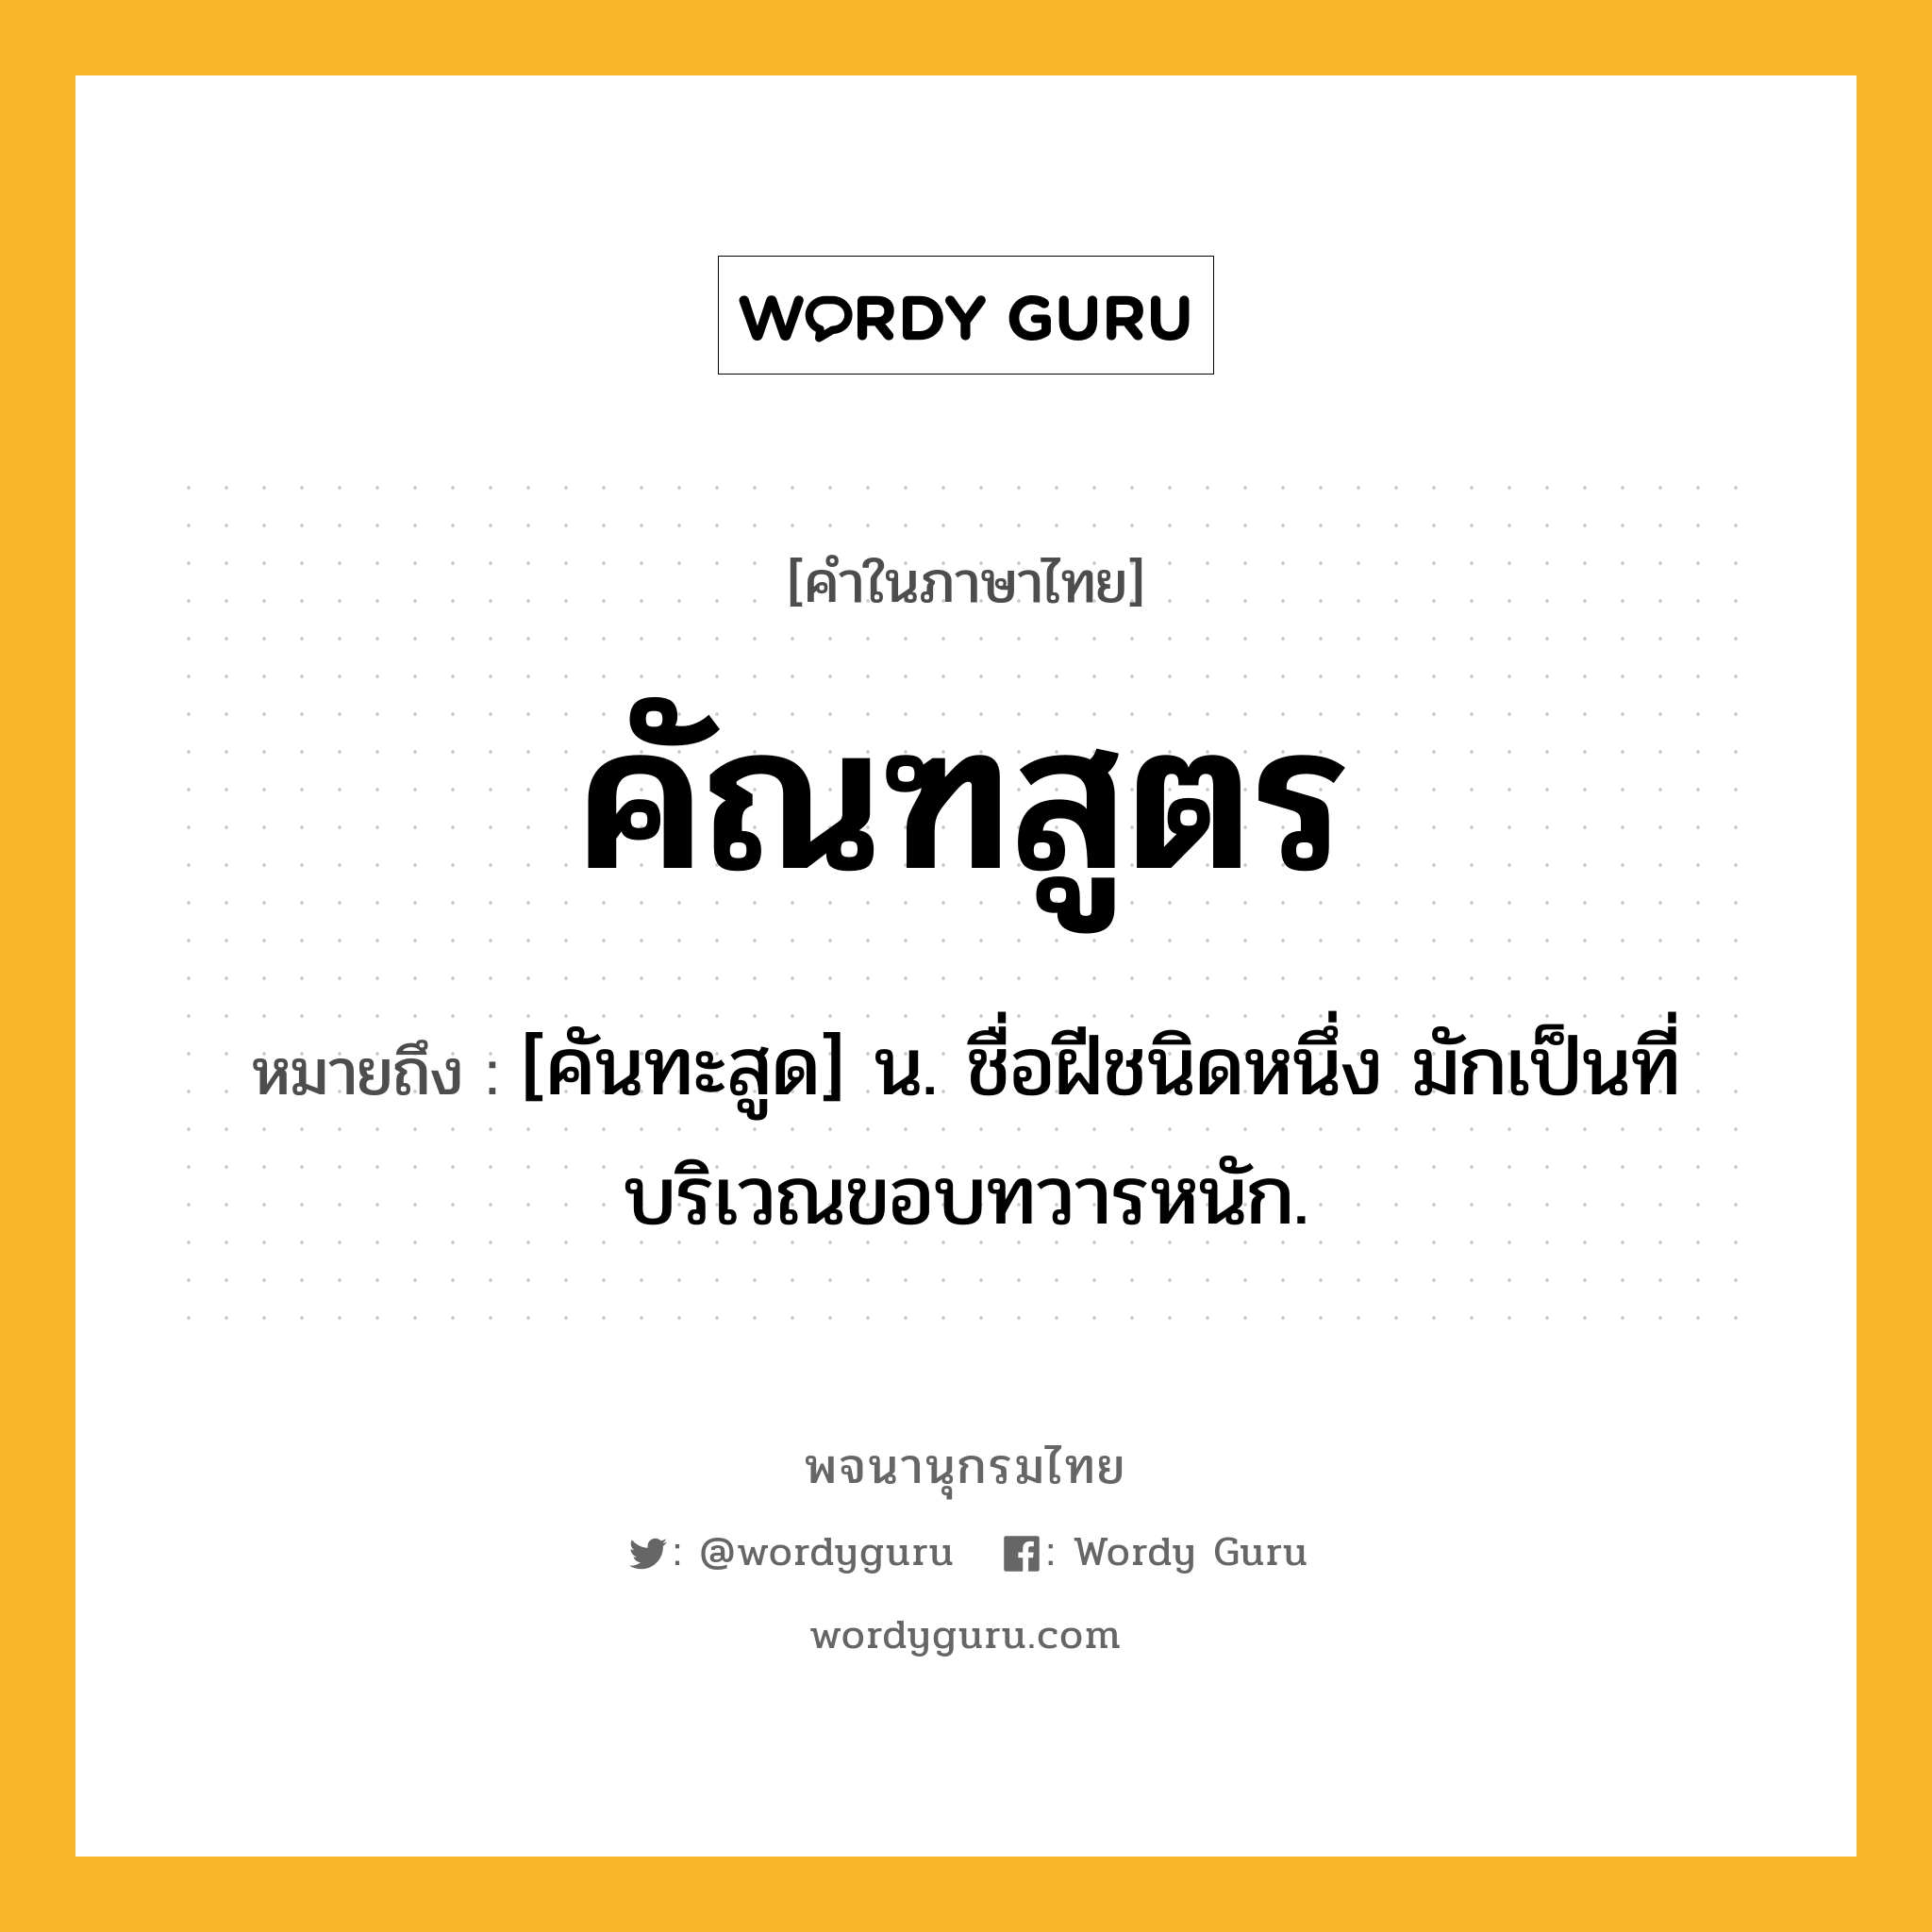 คัณฑสูตร ความหมาย หมายถึงอะไร?, คำในภาษาไทย คัณฑสูตร หมายถึง [คันทะสูด] น. ชื่อฝีชนิดหนึ่ง มักเป็นที่บริเวณขอบทวารหนัก.